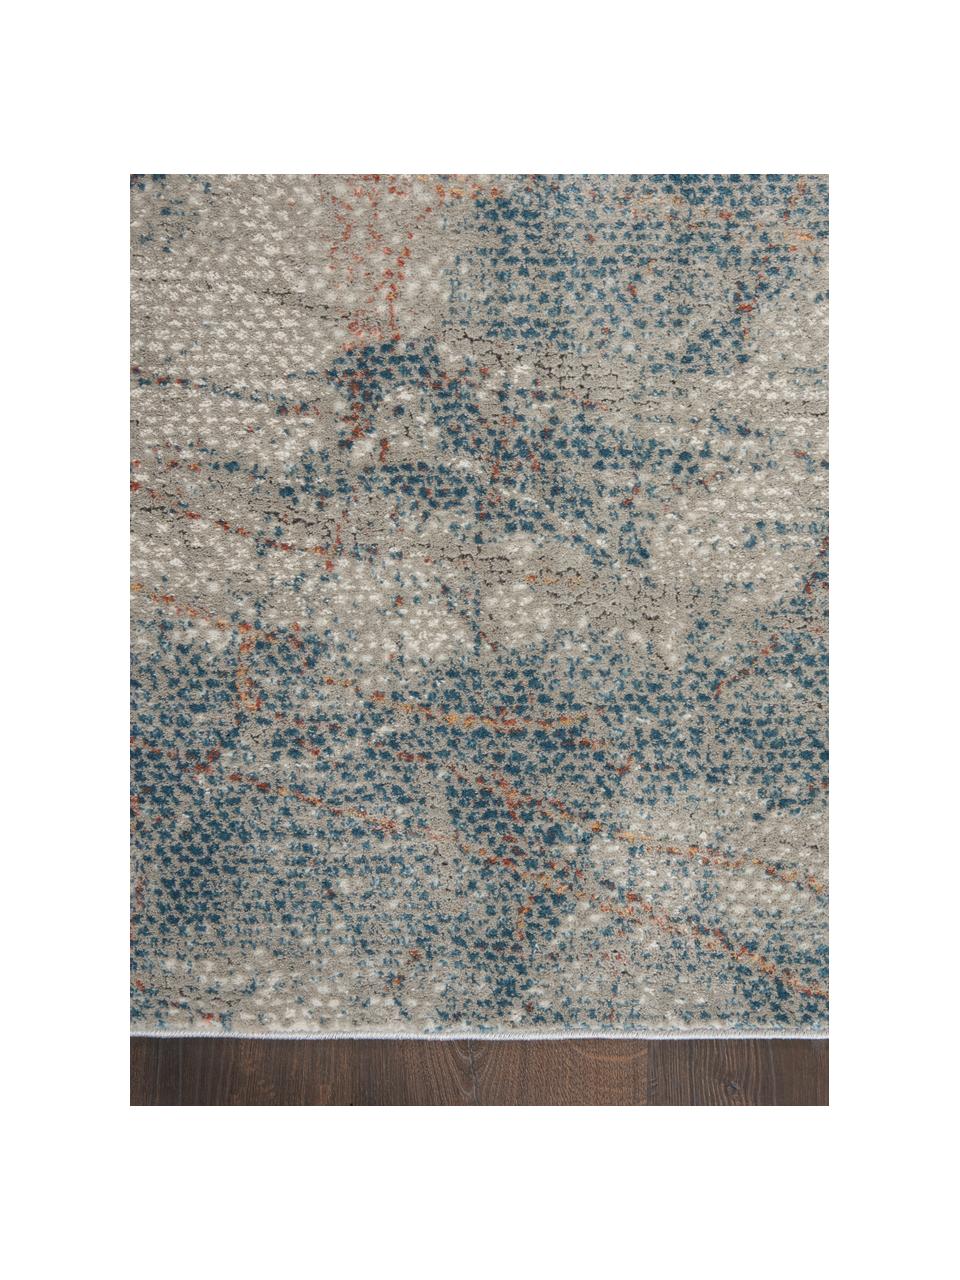 Loper met patroon Rustic in grijs/blauw/beige, Bovenzijde: 51% polypropyleen, 49% po, Onderzijde: latex, Grijs, blauw, beige, 65 x 230 cm